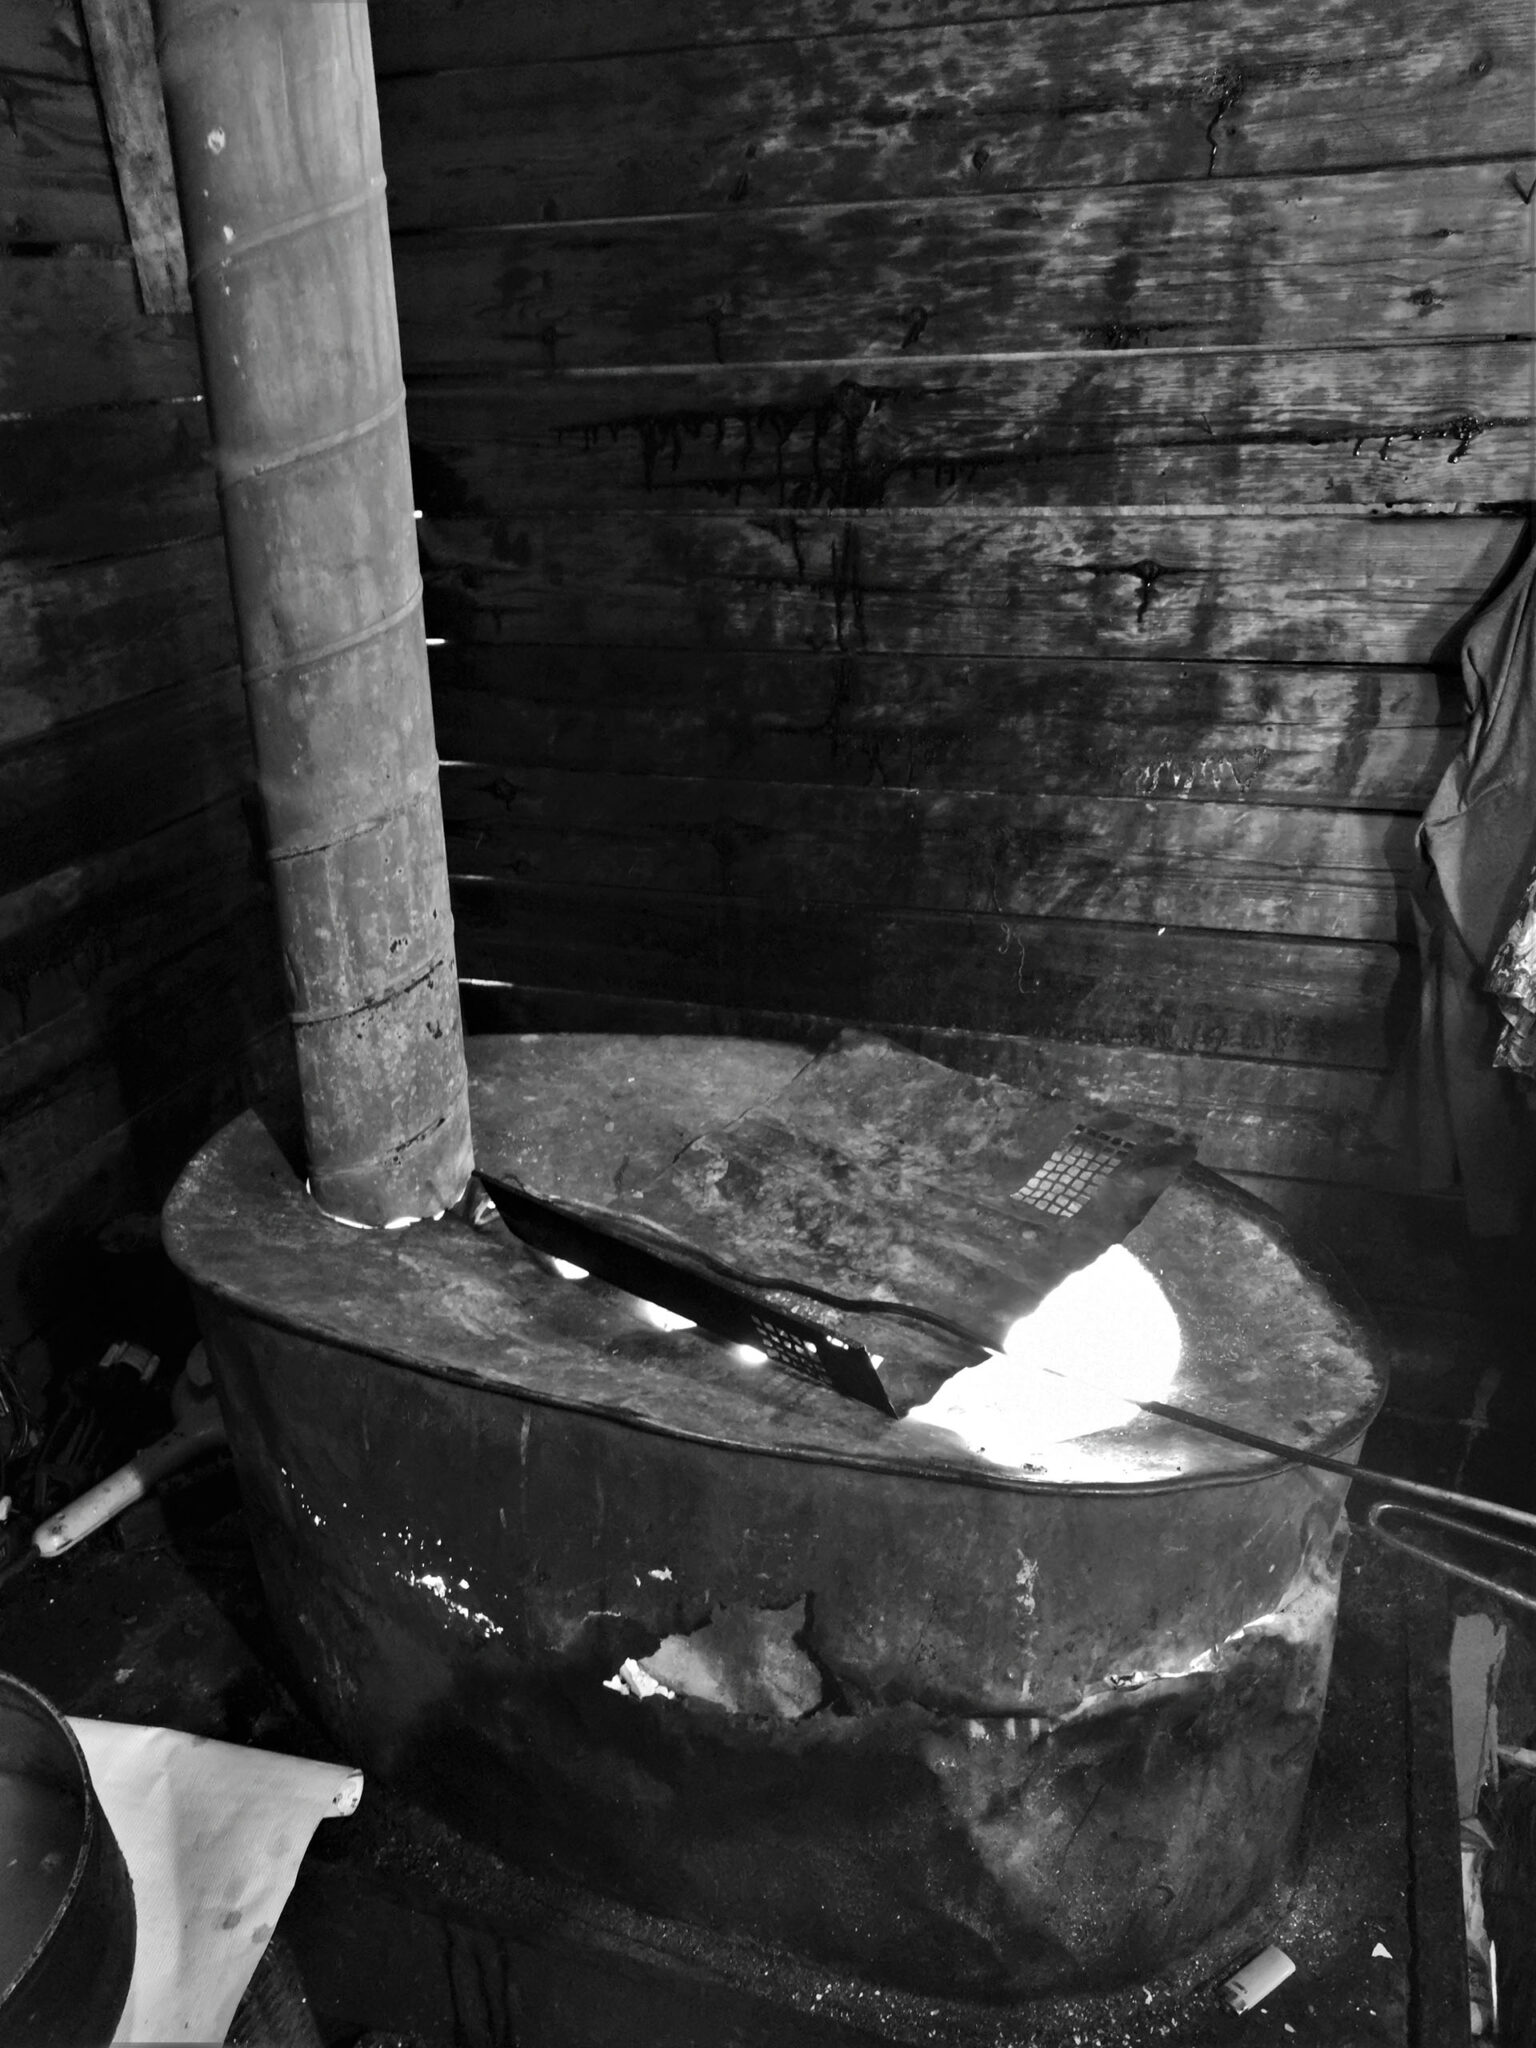 La famille Stănescu Mures se chauffe grâce à un poêle à bois qui dégage une grosse chaleur. Mais il est en piteux état et est troué à plusieurs endroits, ce qui dégage des fumées toxiques.